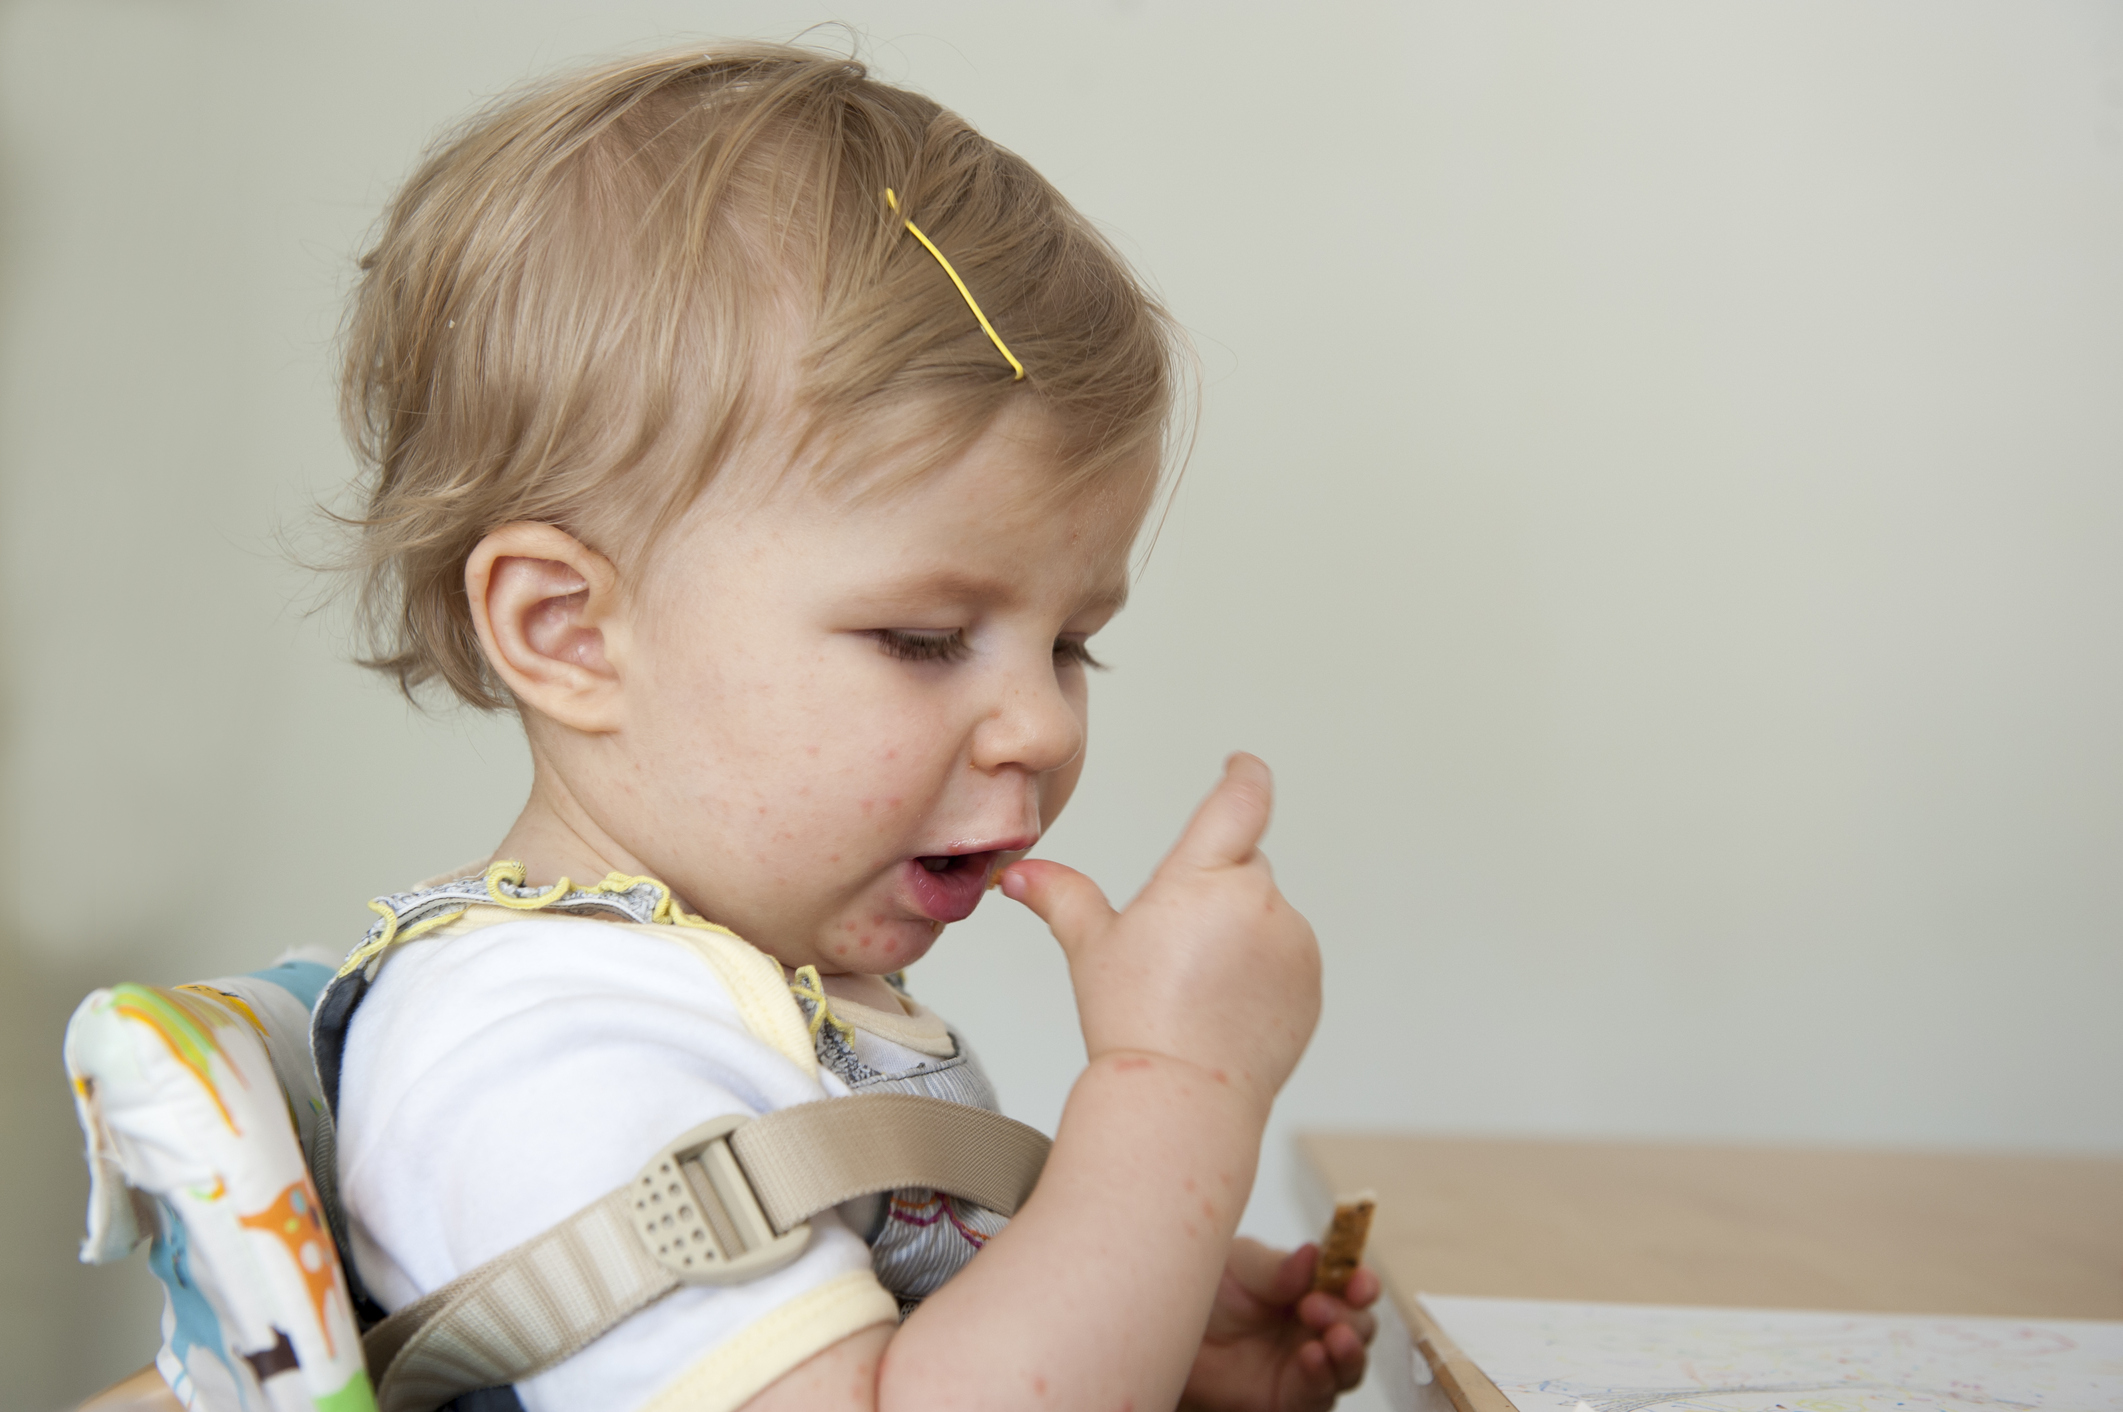 criança com por volta de 1 ano, menino, pele clara e cabelo loiro, sentado na cadeirinha de alimentação. Está levando um dedo a boca.